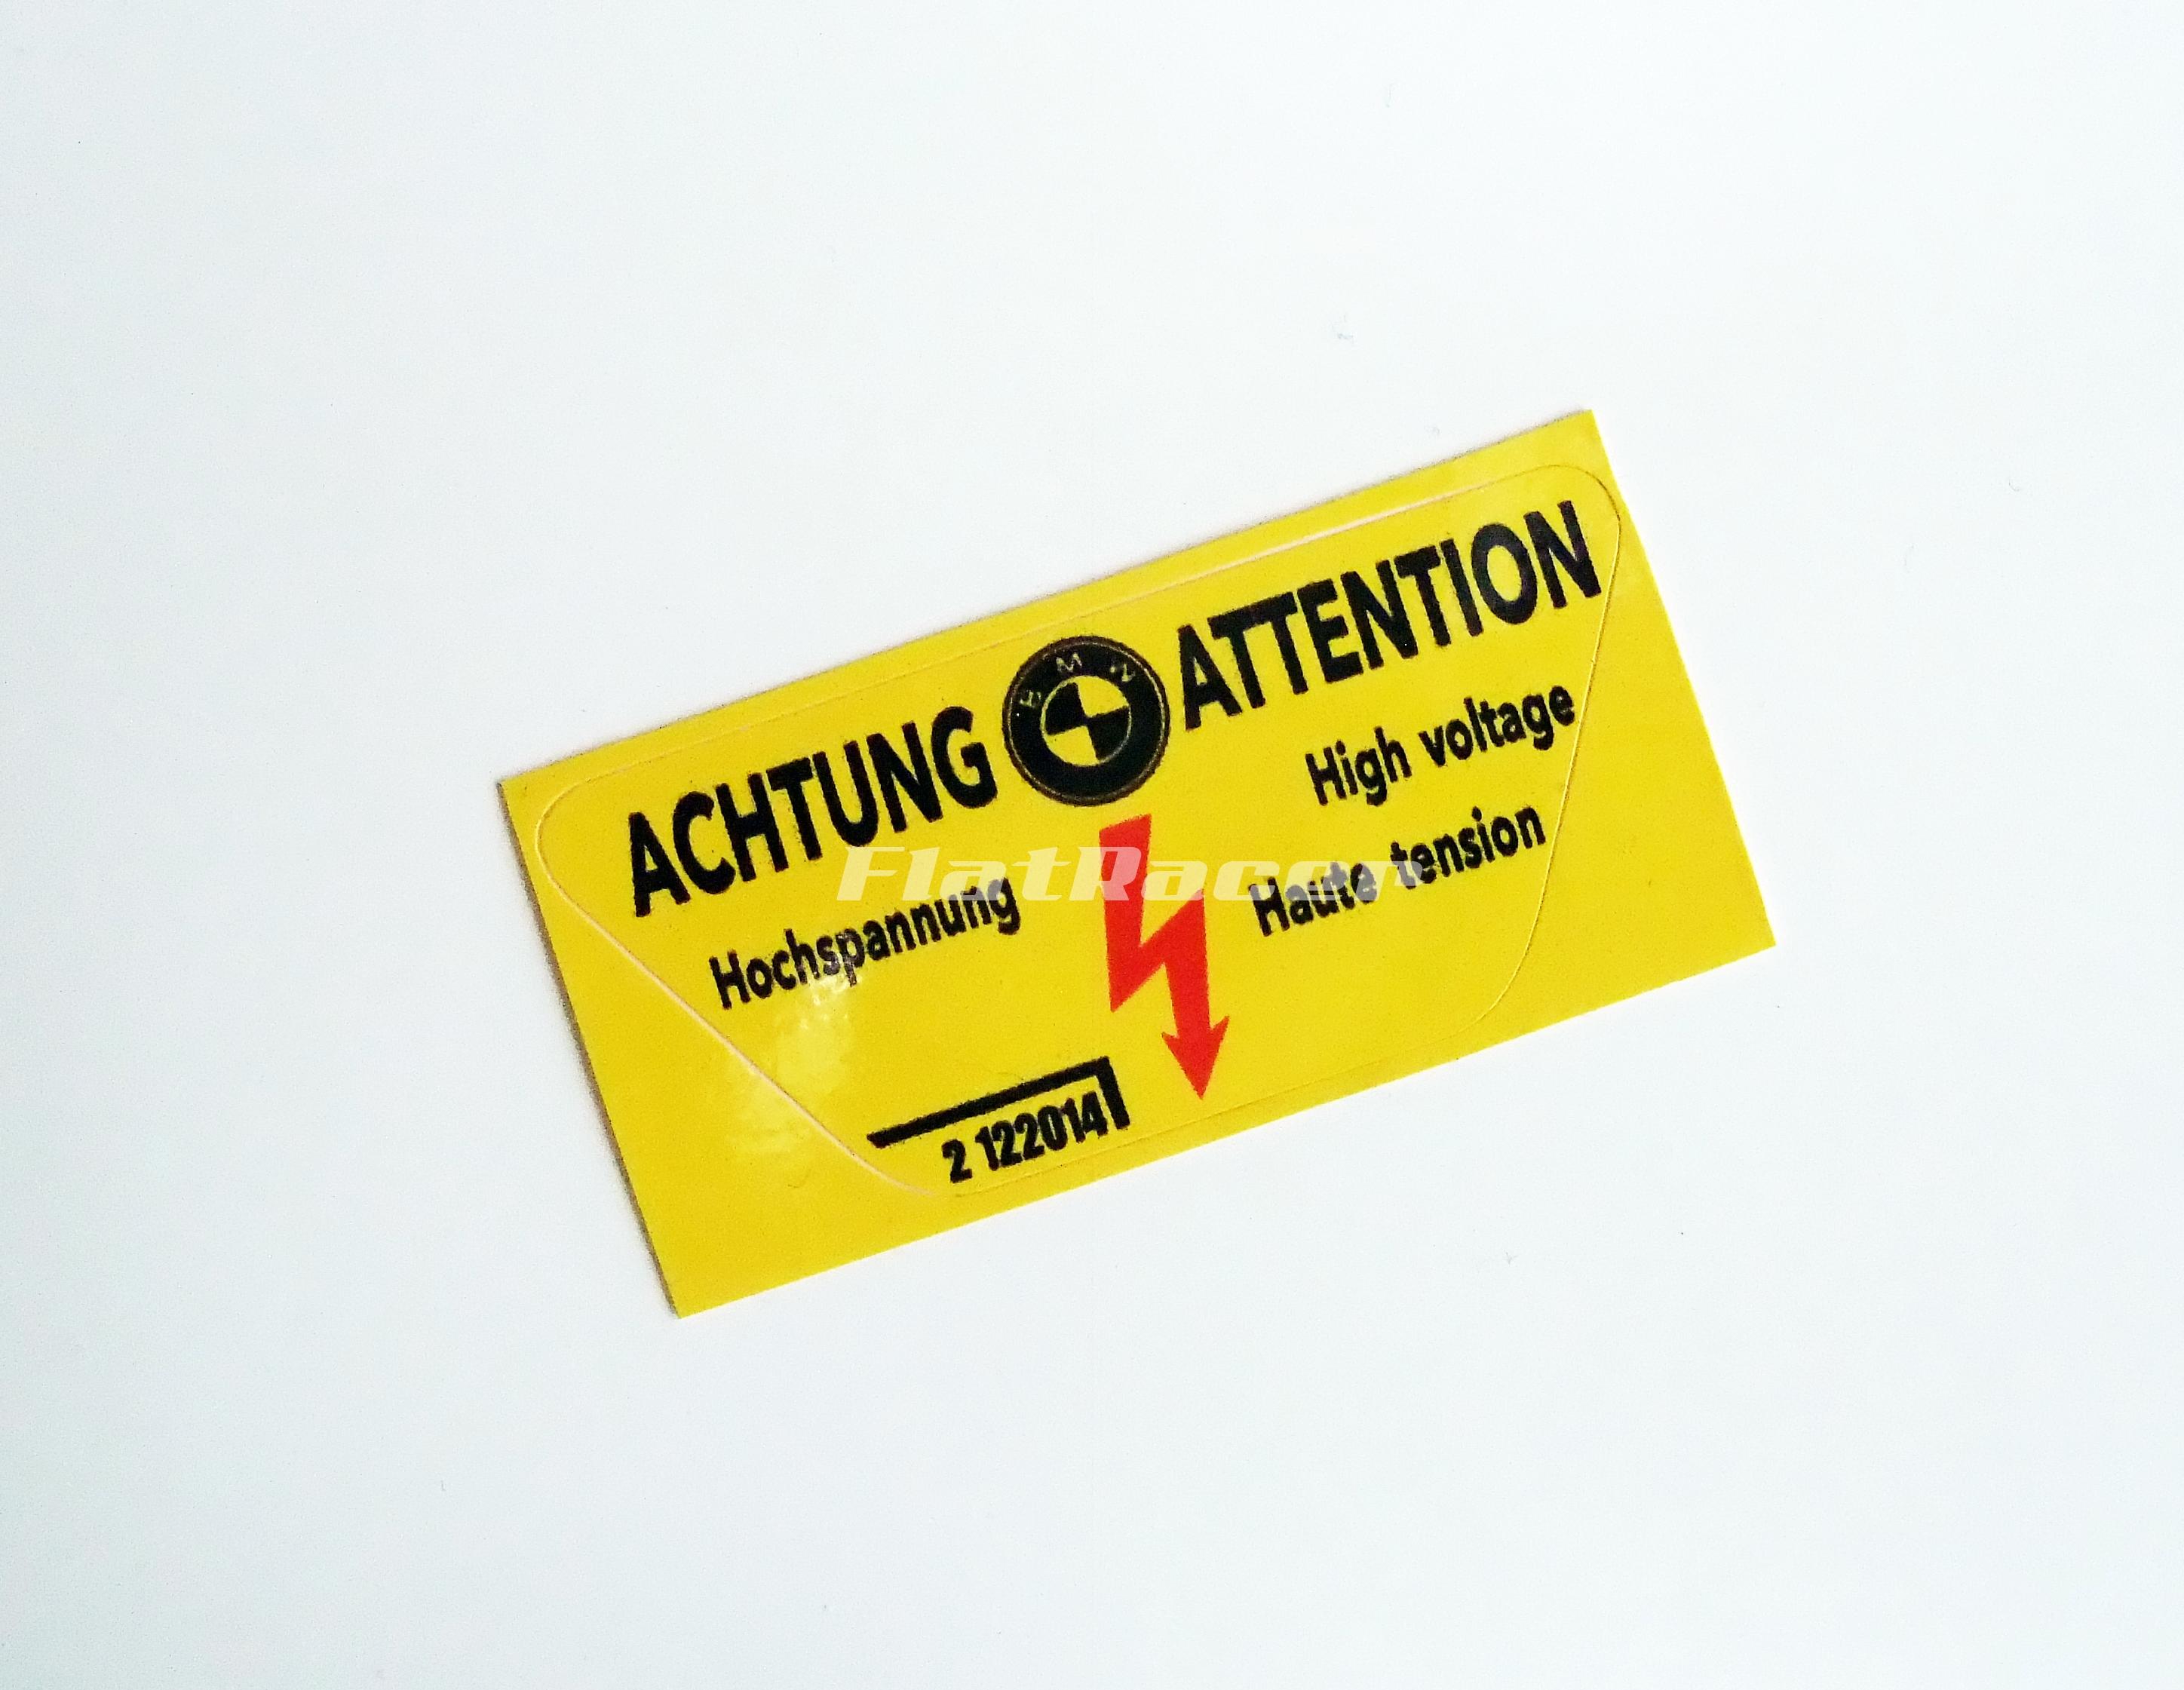 BMW Achtung! High voltage yellow sticker - 2 122 014